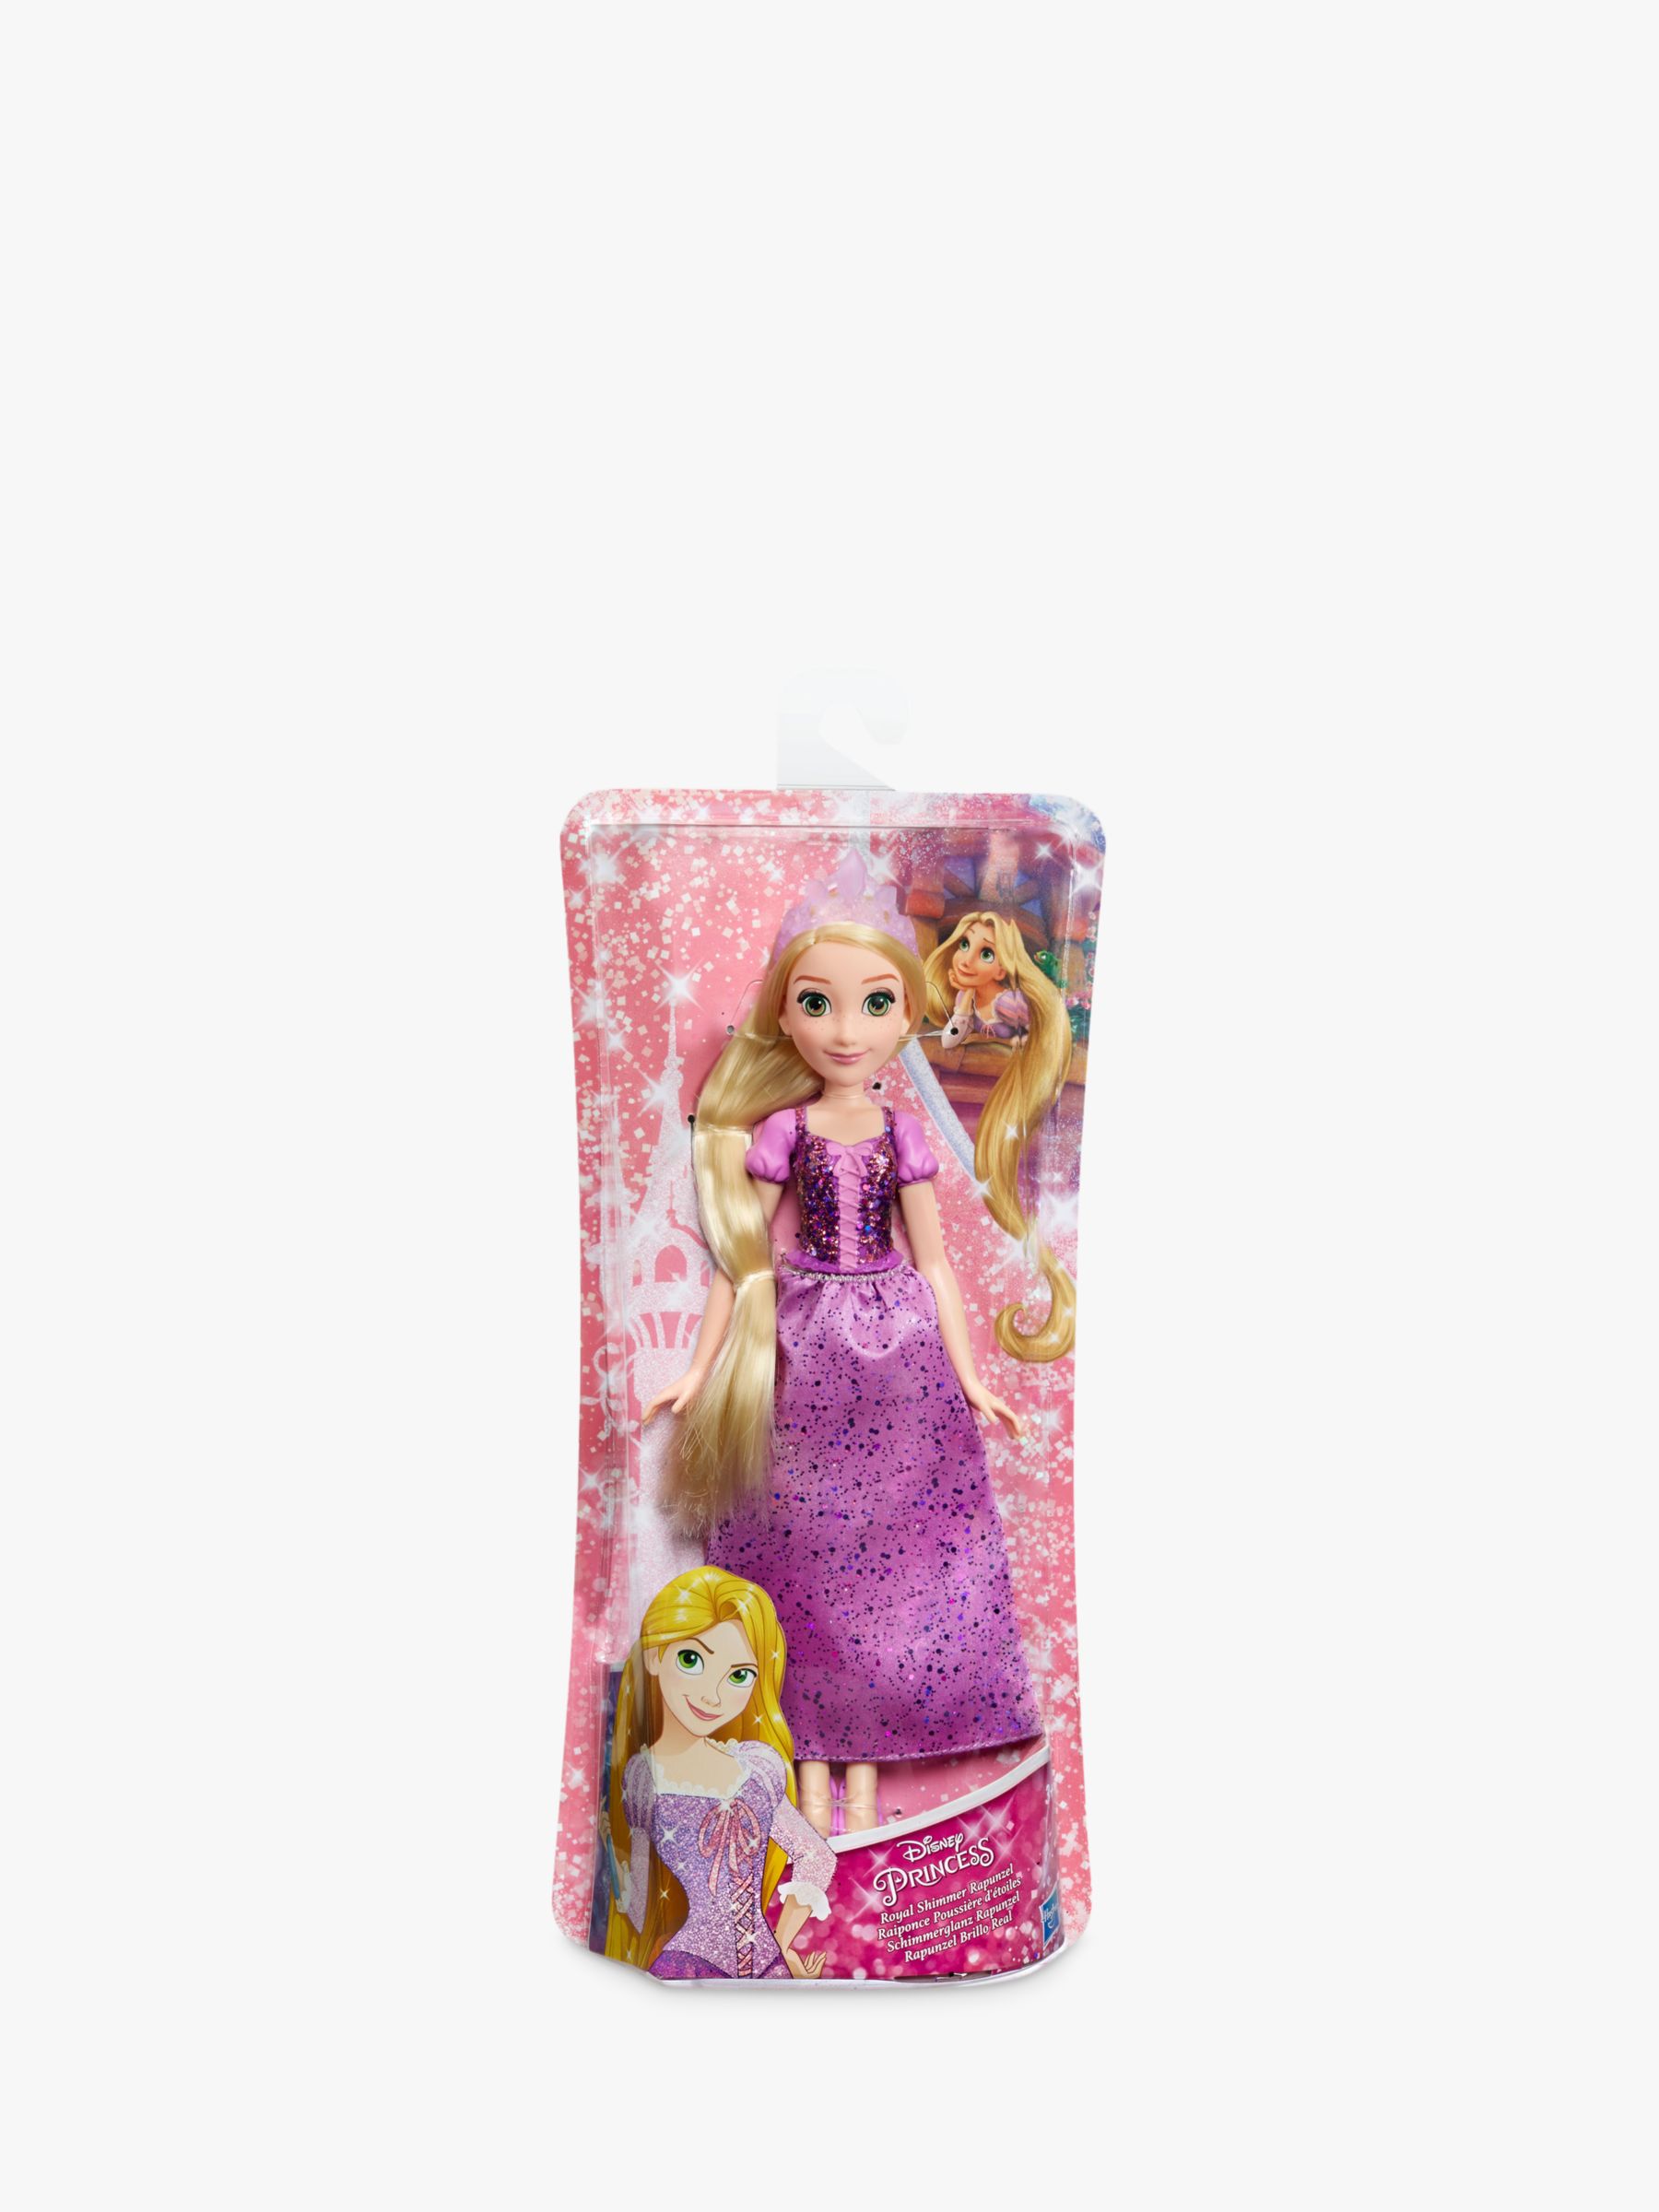 rapunzel dolls for sale